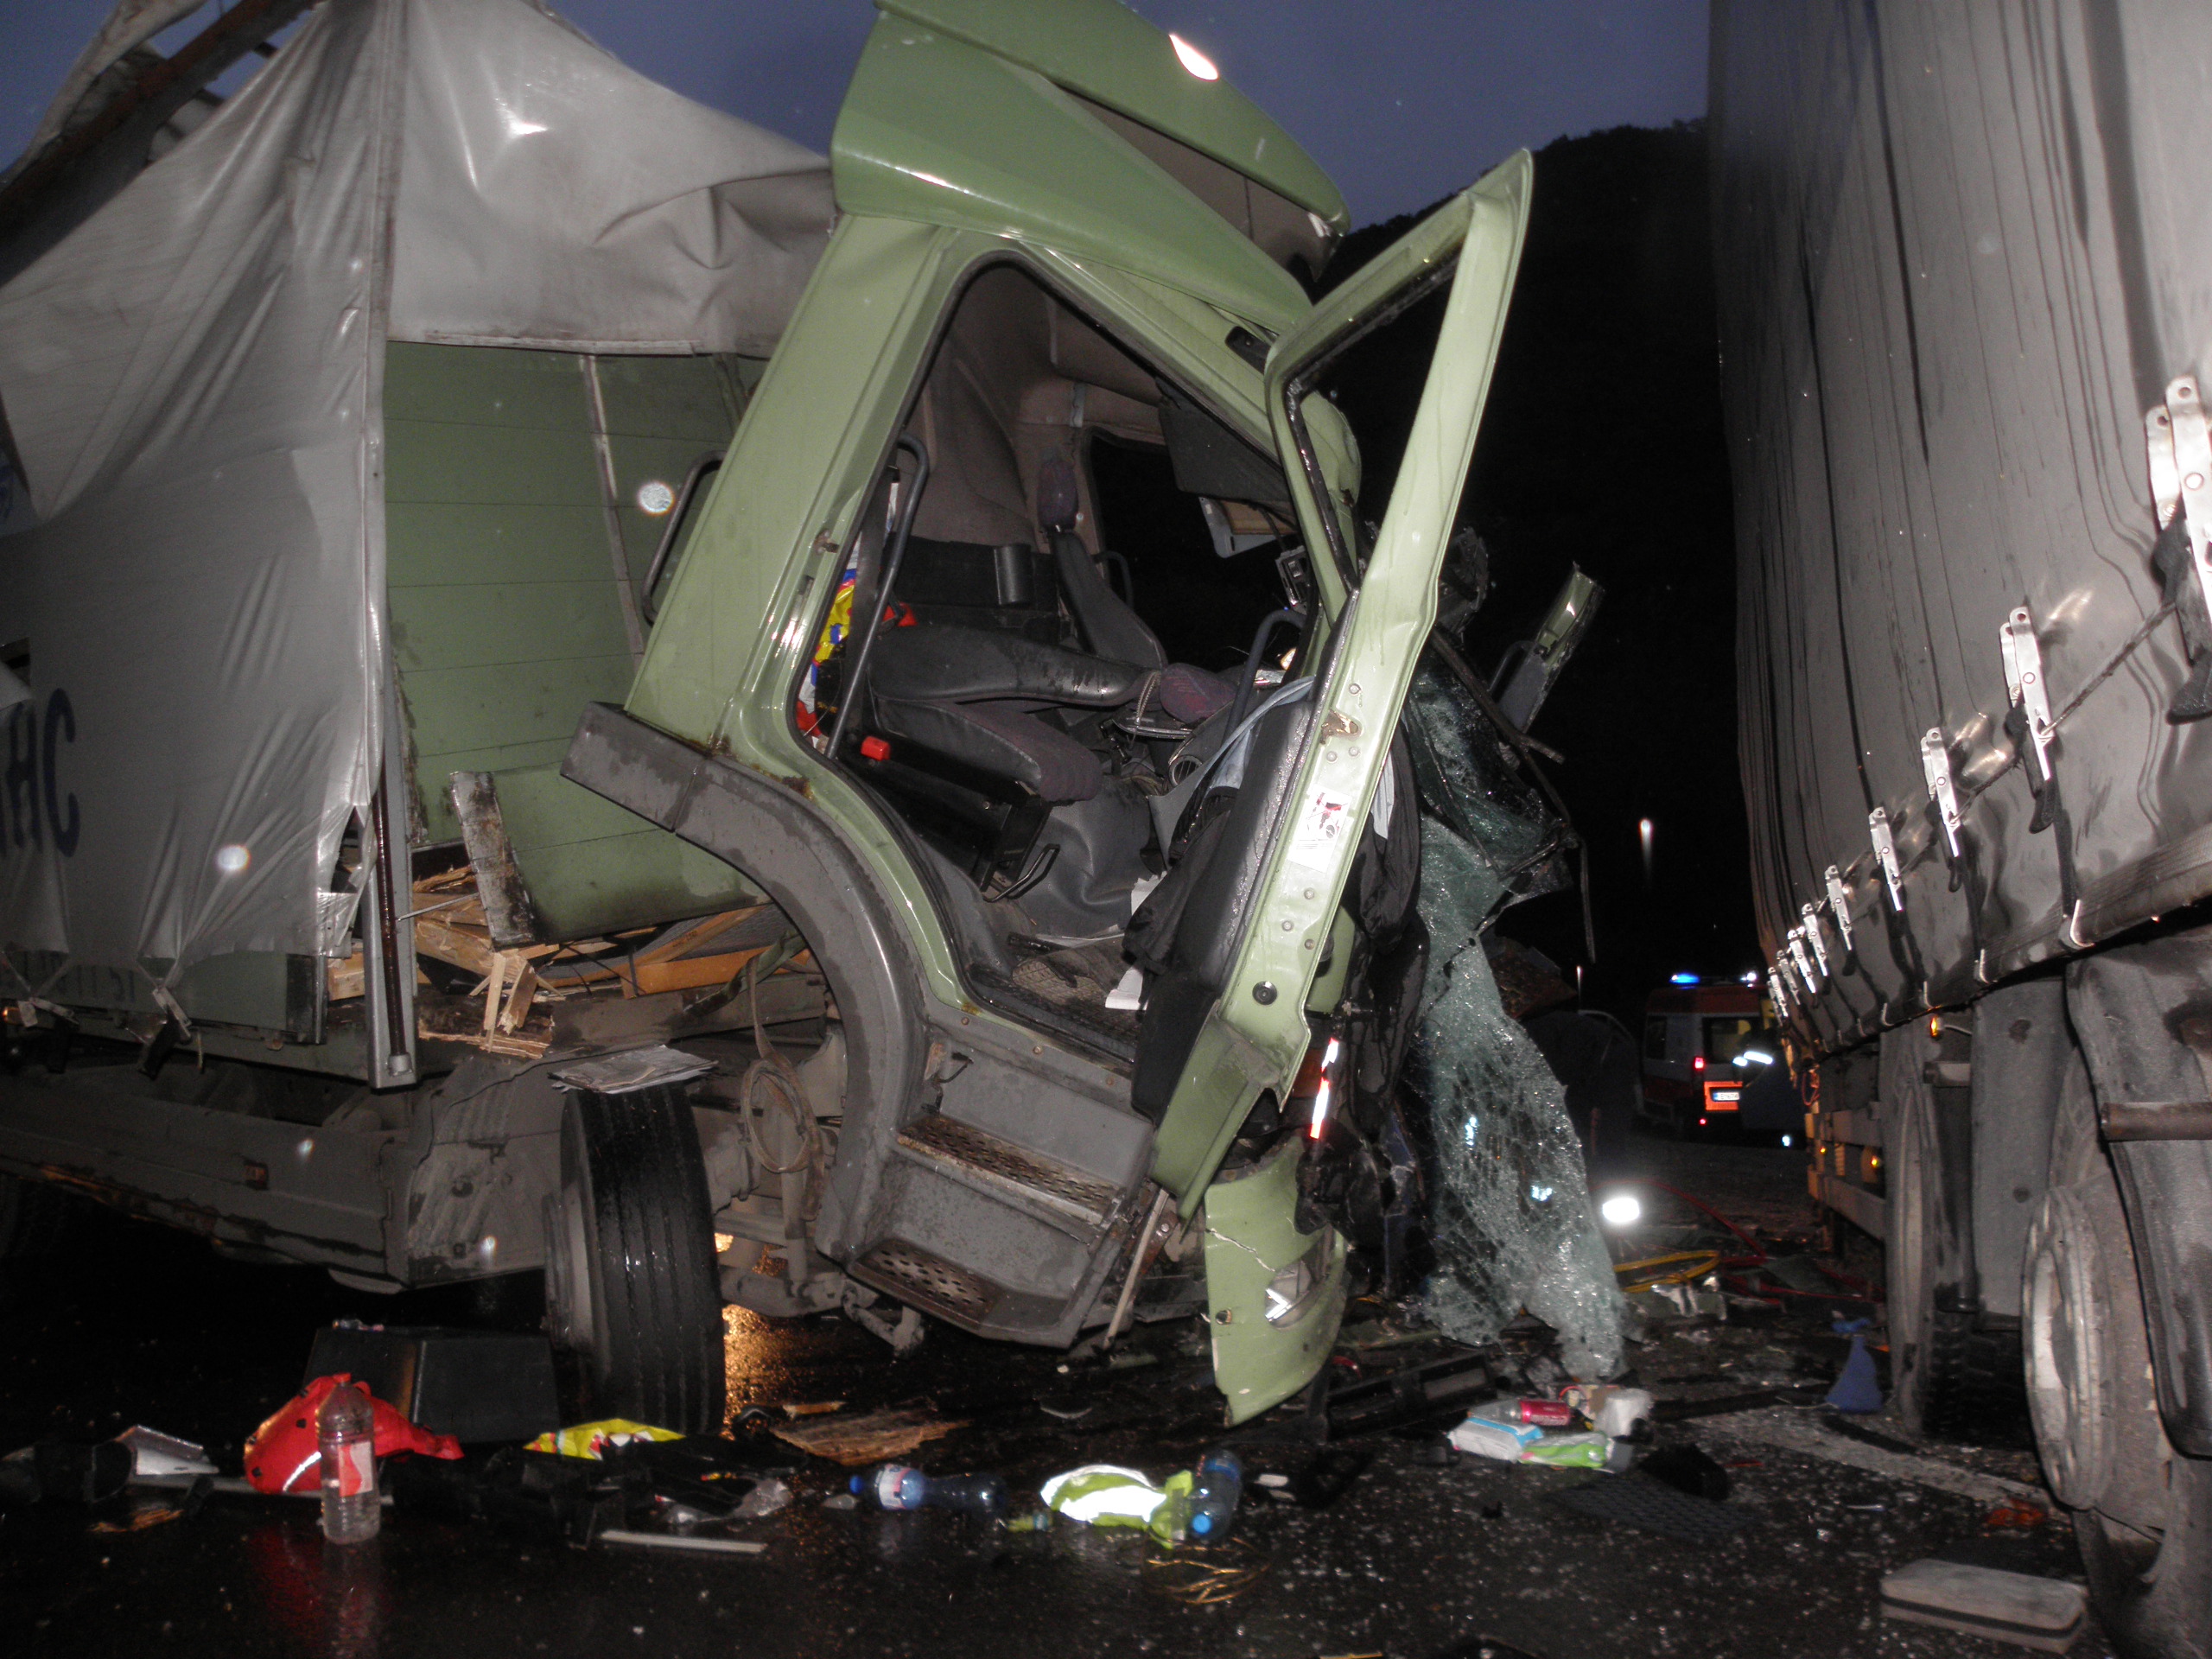 След катастрофата пожарникари 45 минути рязаха кабината на единия товарен камион, за да извадят водача, който бе затиснат